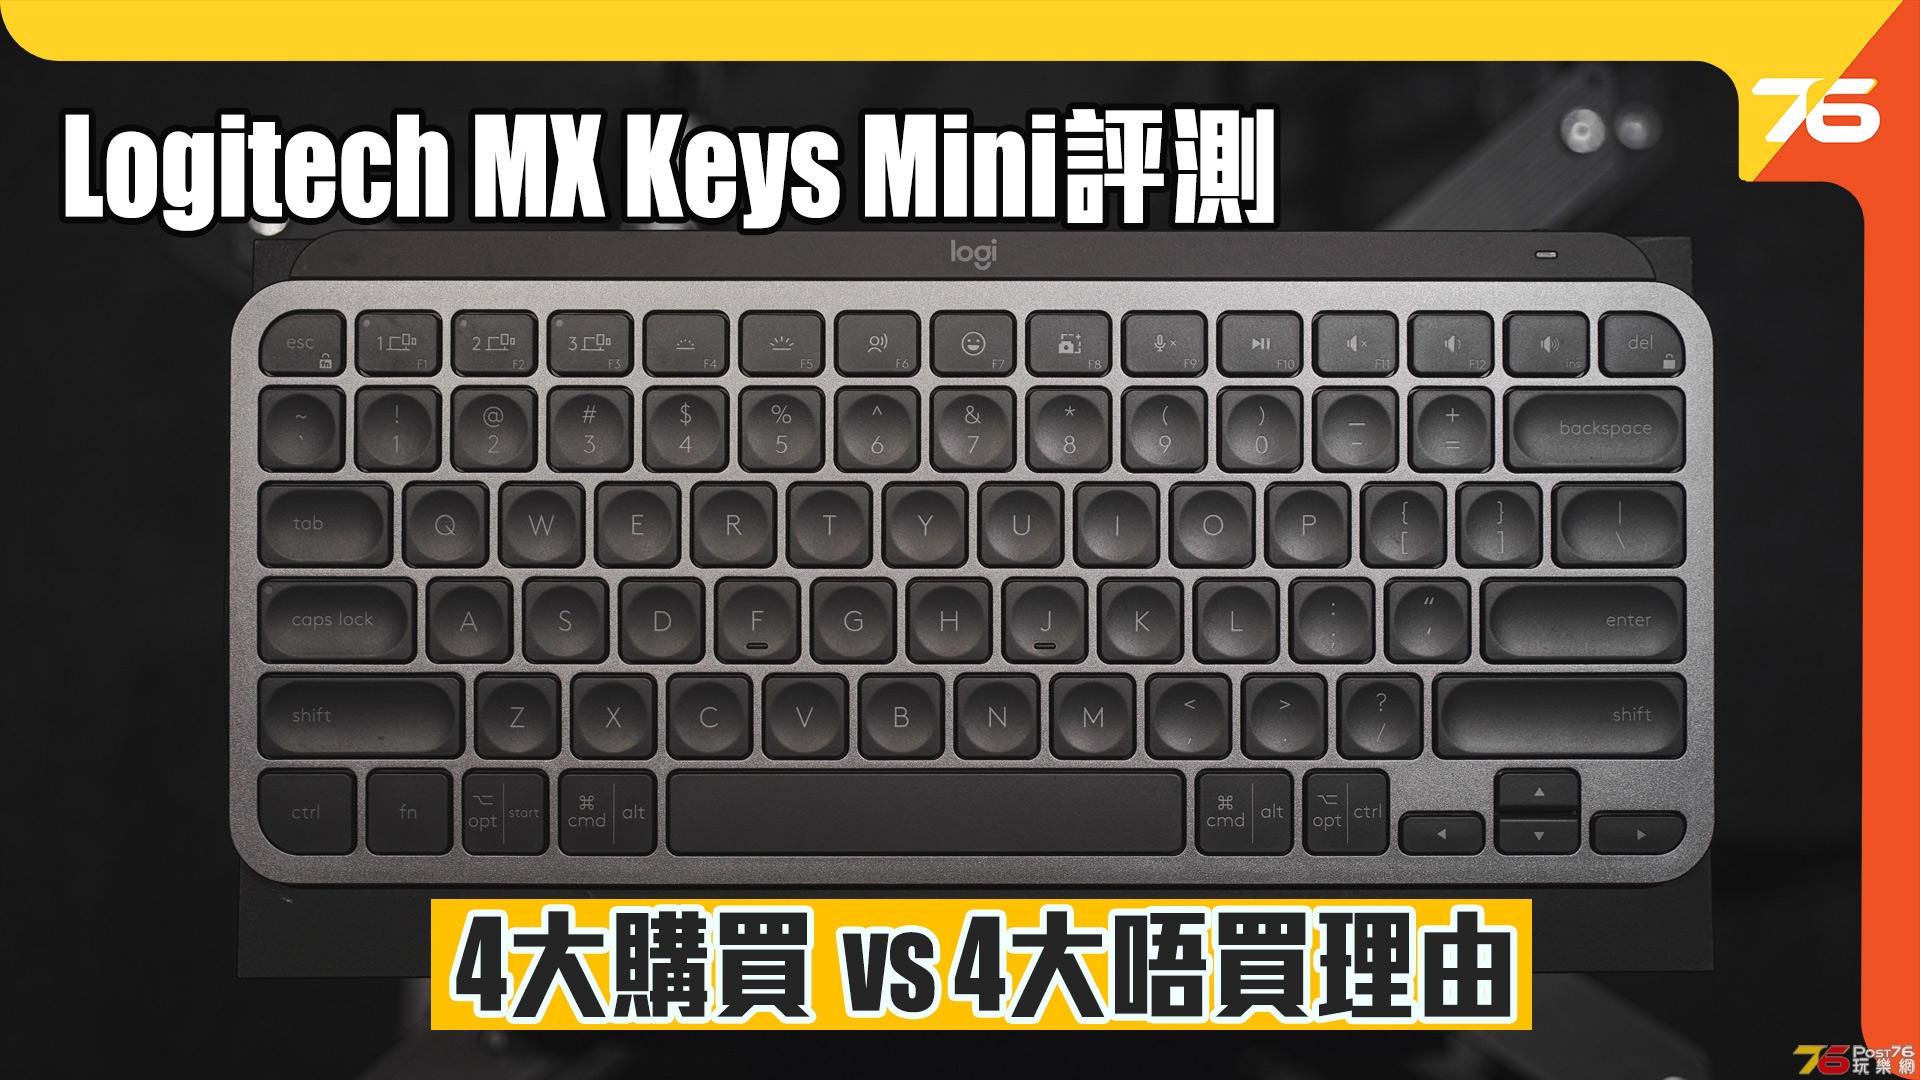 MX Keys Mini.jpg